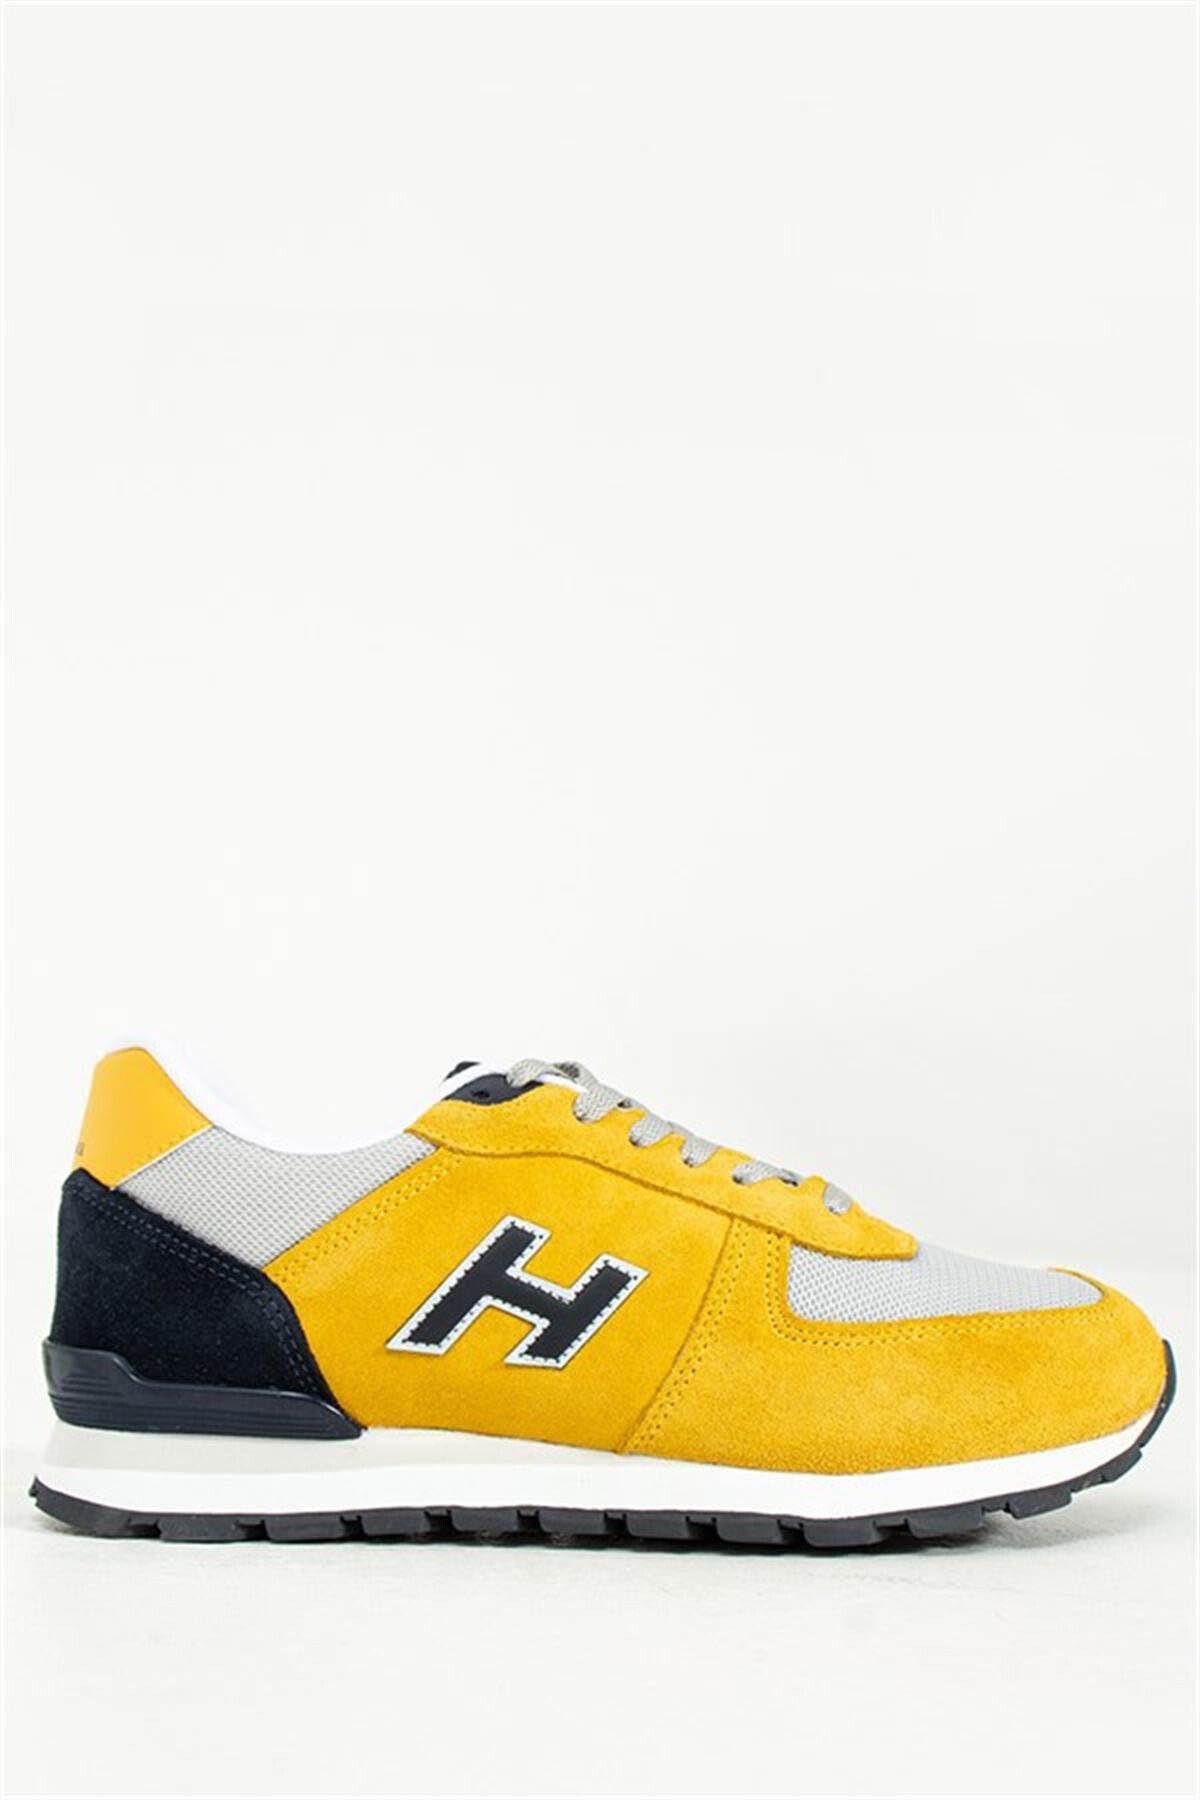 Hammer Jack Erkek Sneaker Hardal 19250-m